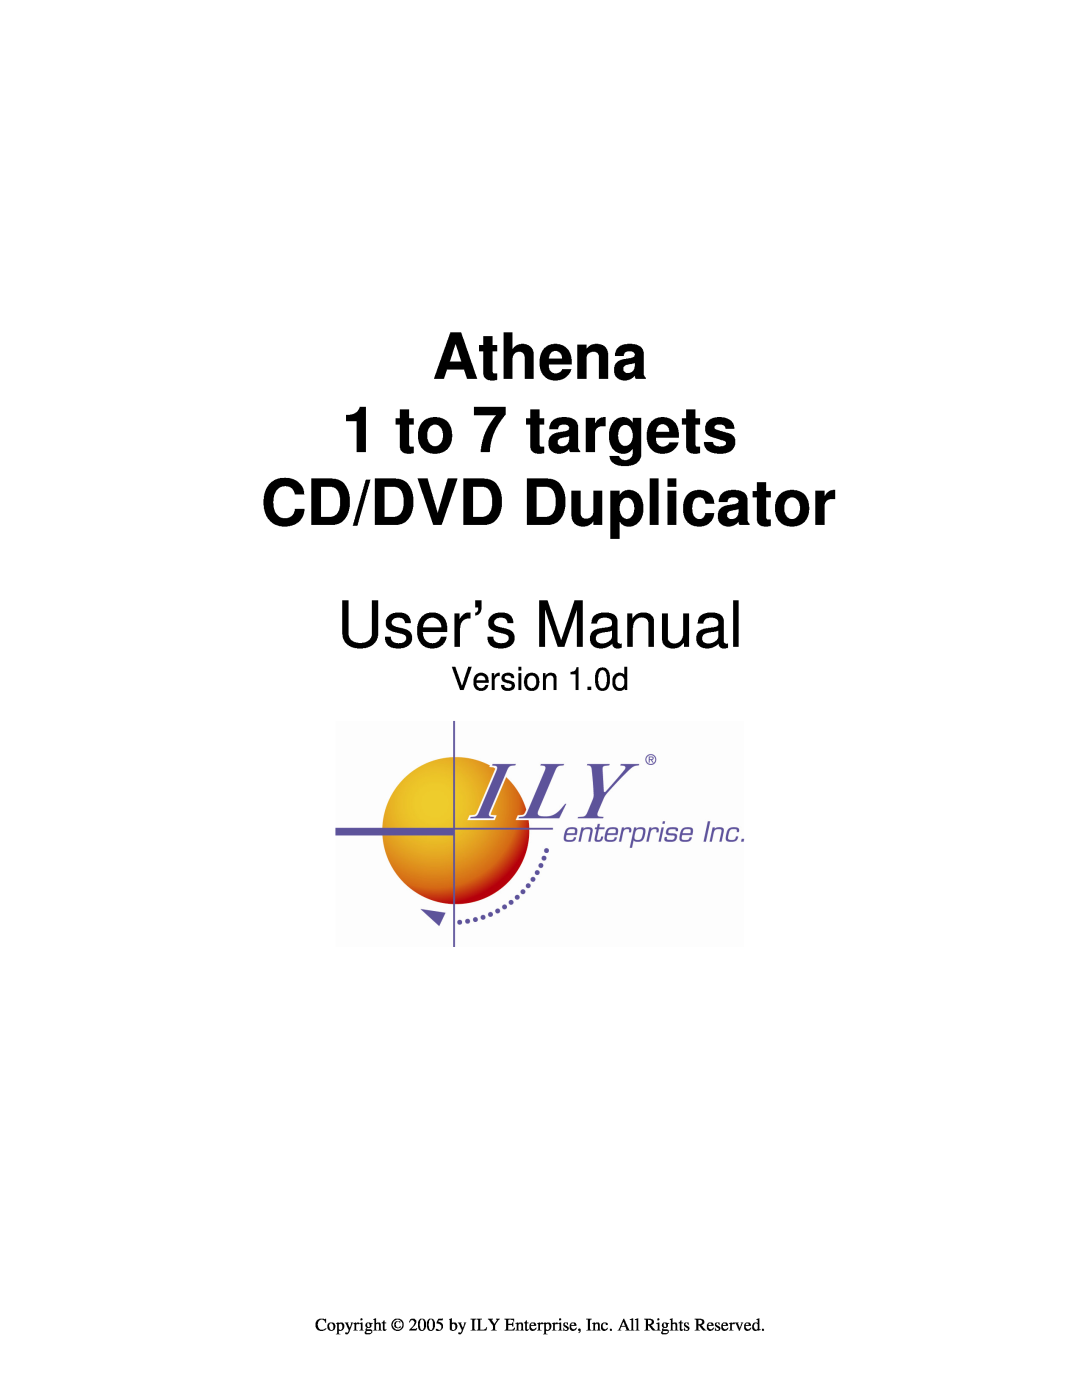 ILY Enterprise user manual Athena 1 to 7 targets CD/DVD Duplicator, Version 1.0d 